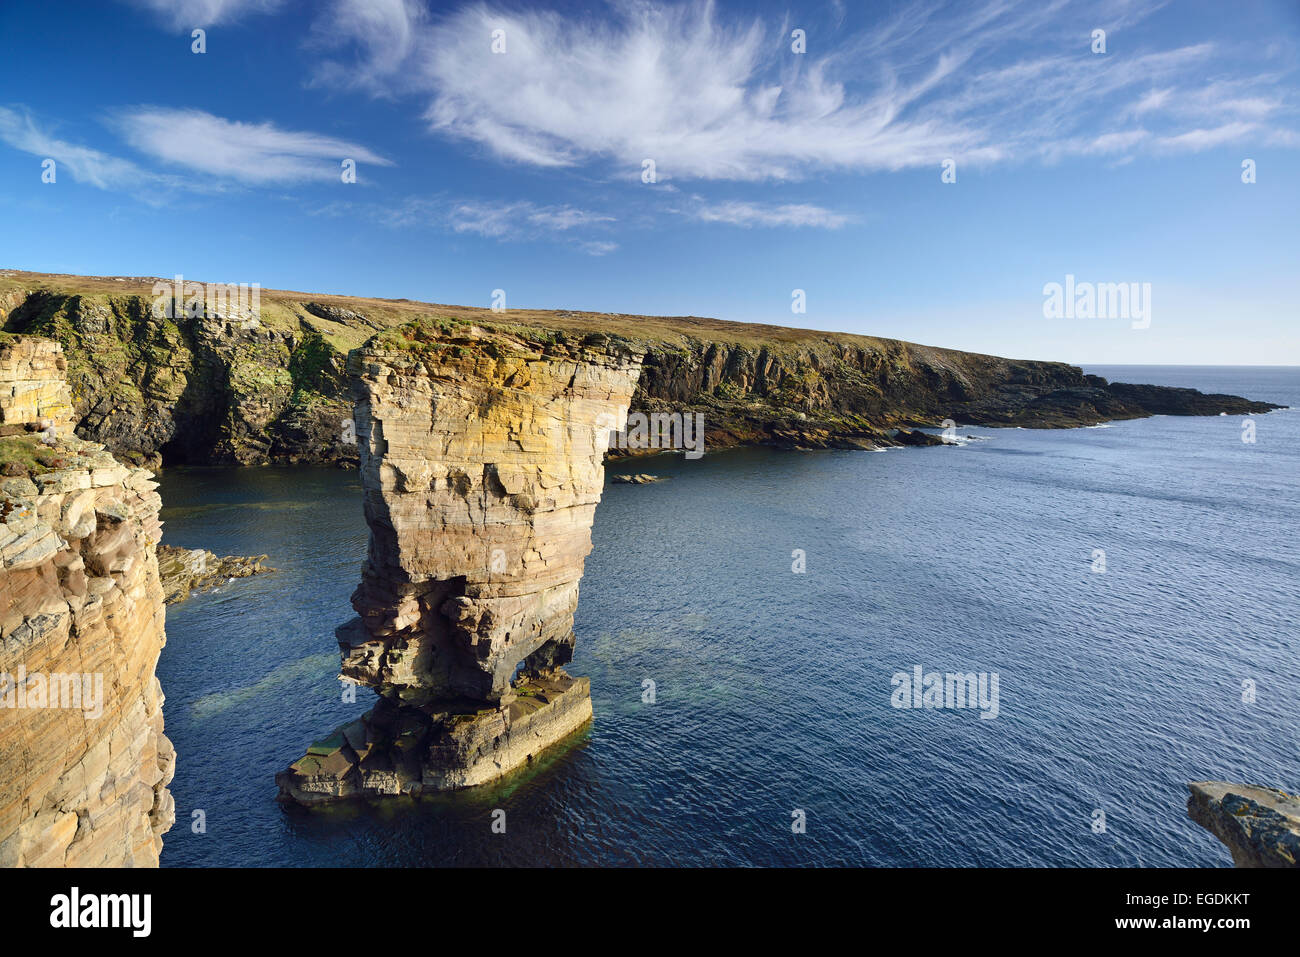 Pinnacolo di roccia castello di Yesnaby nel mare, Castello di Yesnaby, isole Orcadi Scozia, Gran Bretagna, Regno Unito Foto Stock